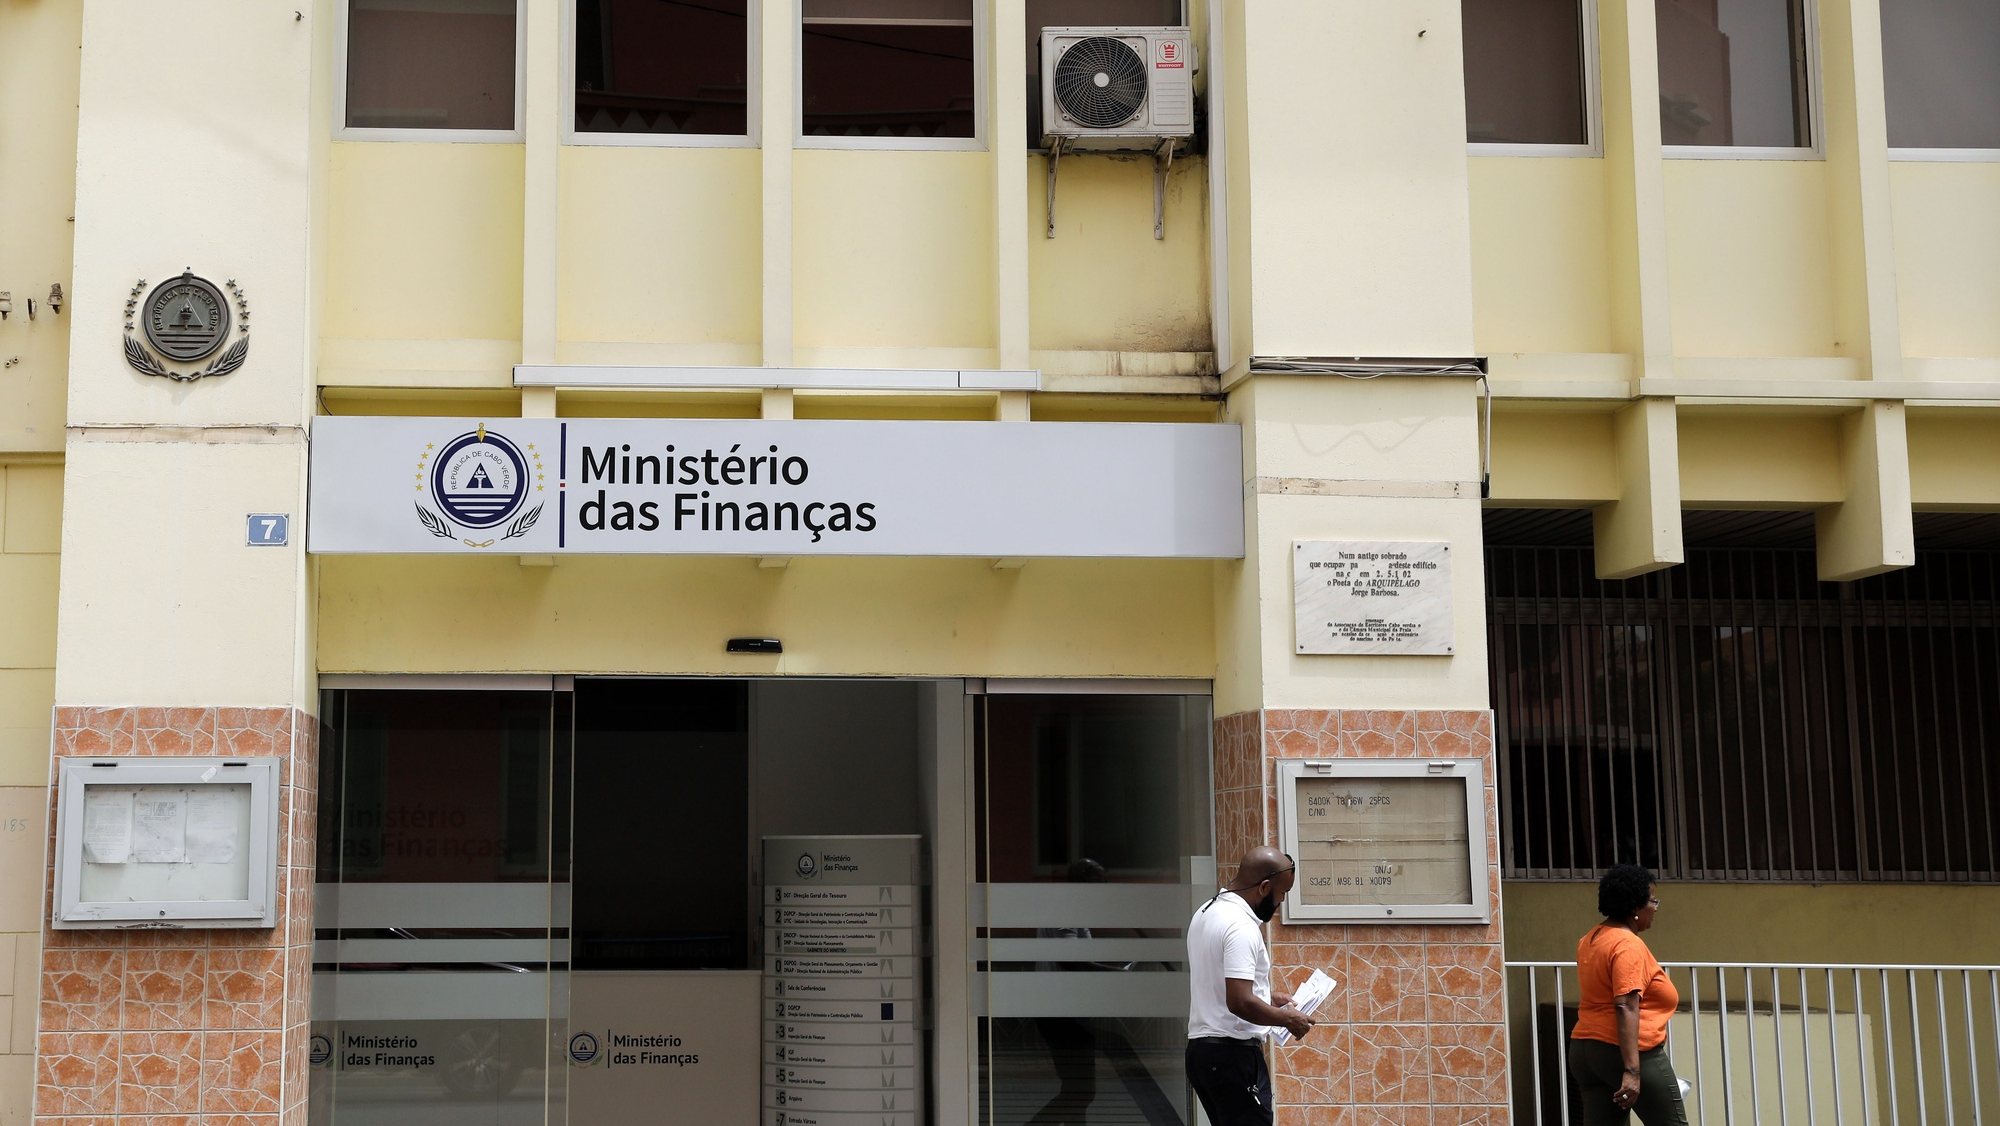 Ministério da Finanças ,Cidade da Praia, Cabo Verde, 14 de junho de 2019. ANTÓNIO COTRIM/LUSA